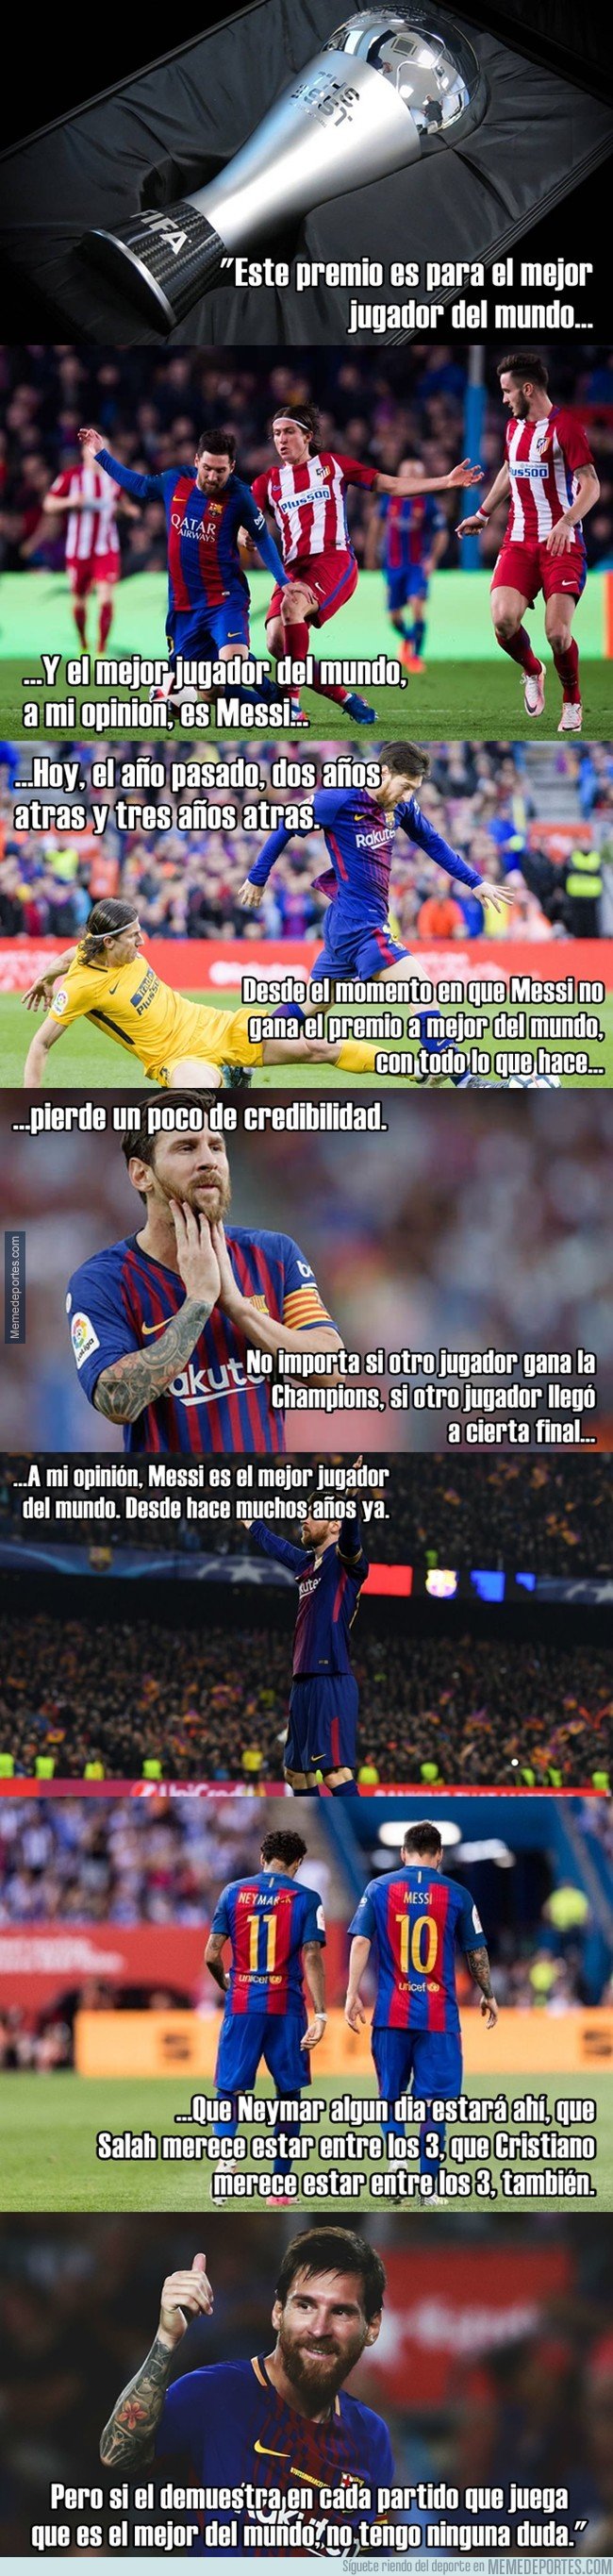 1049687 - Transcripción de la entrevista a Filipe Luis hablando sobre Messi